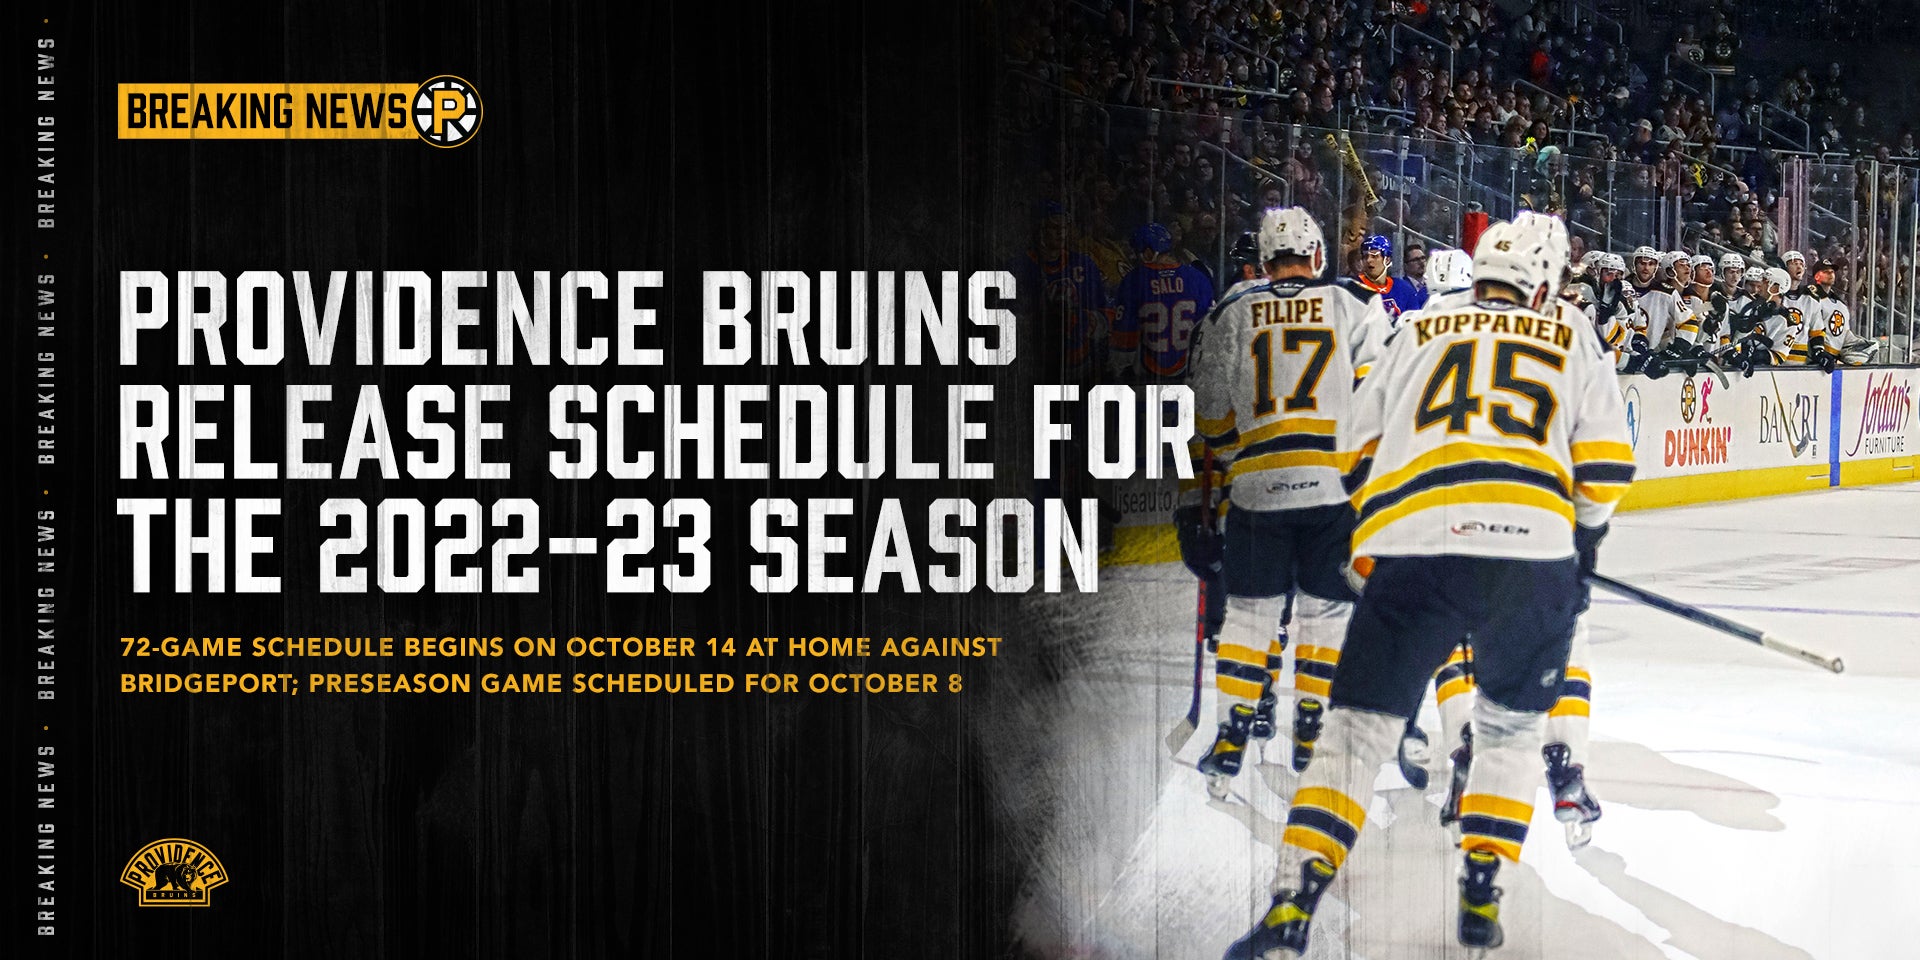 2022-2023 Bruins schedule: Season opens Oct. 12